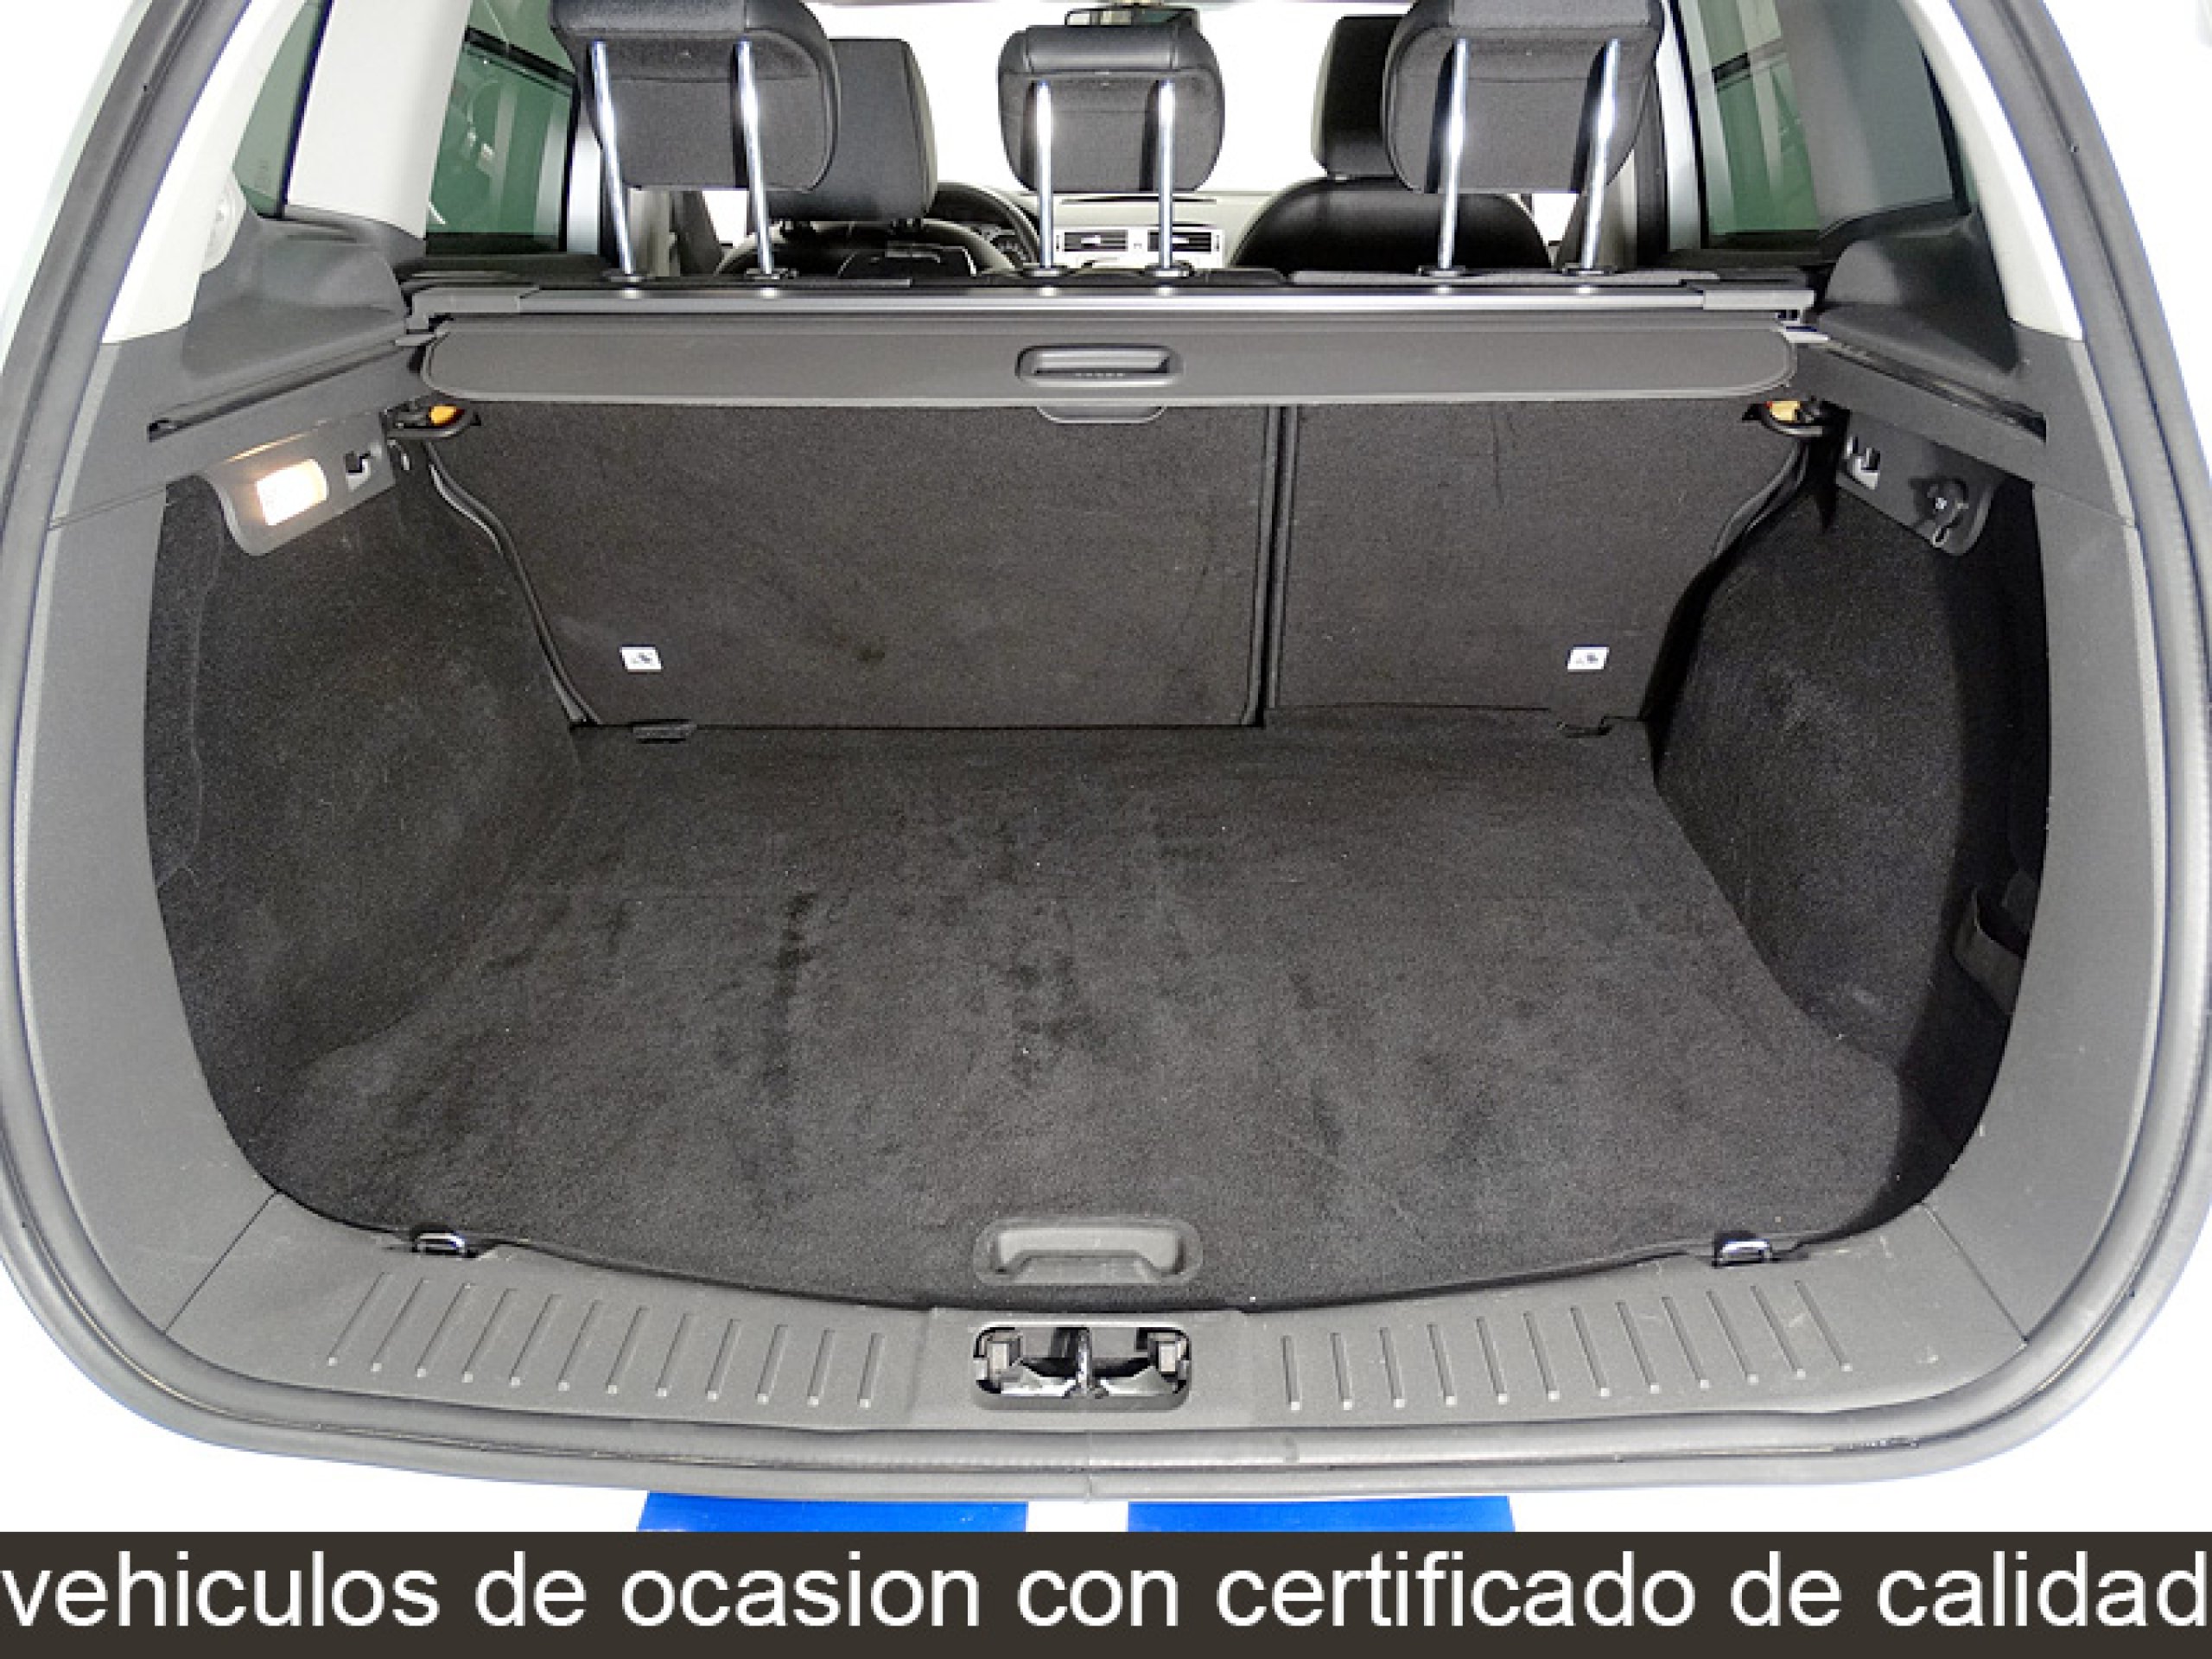 Oferta de Ford Kuga 2.0 TDCi Baqueira Beret 4WD 140CV en Canalcar